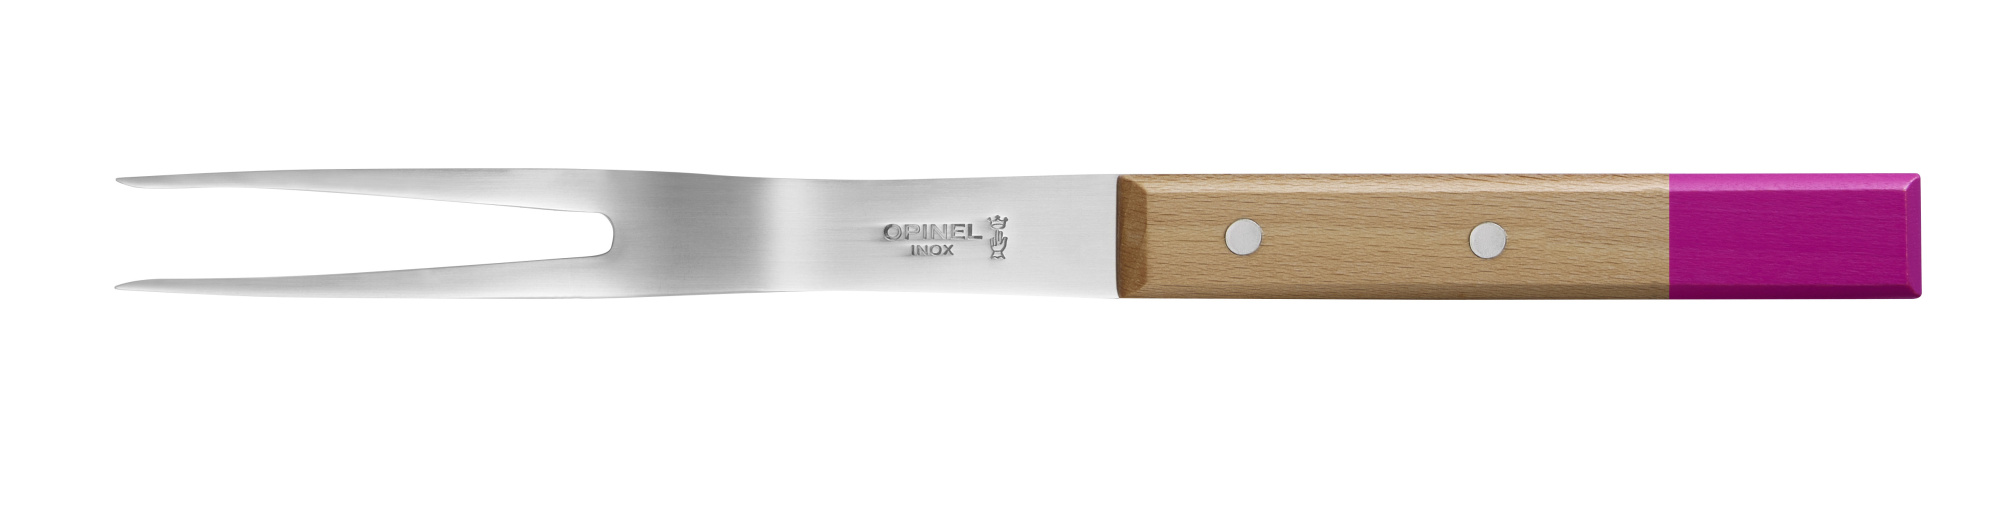 картинка Bилка для нарезания мяса Opinel №124, деревянная рукоять, нержавеющая сталь, 002131